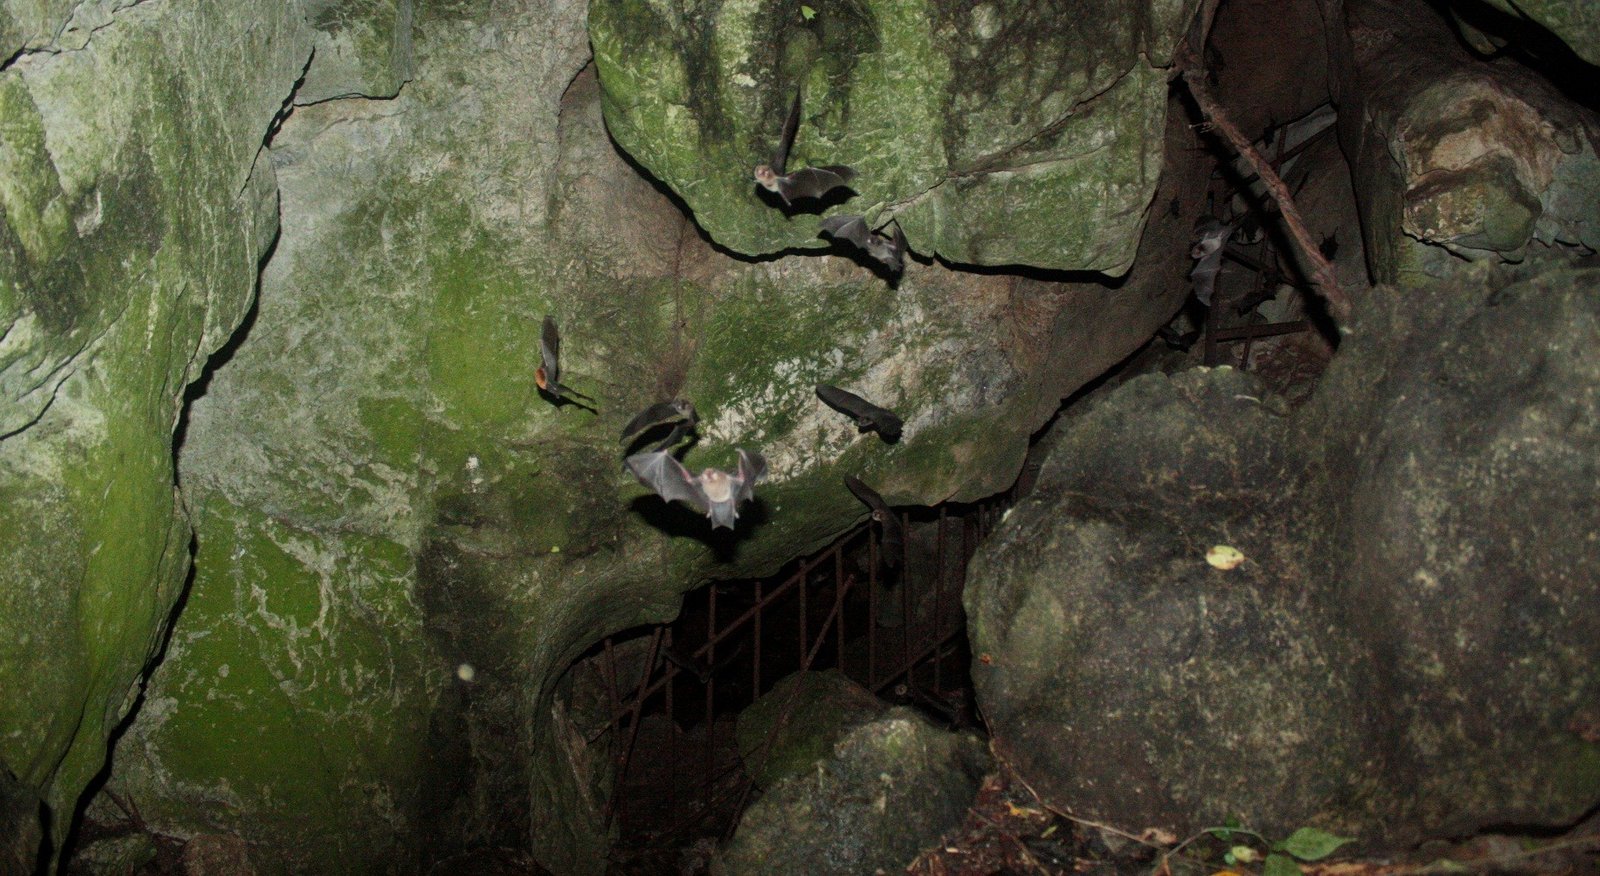 Moormópidos volando dentro de la Cueva de Hato Viejo